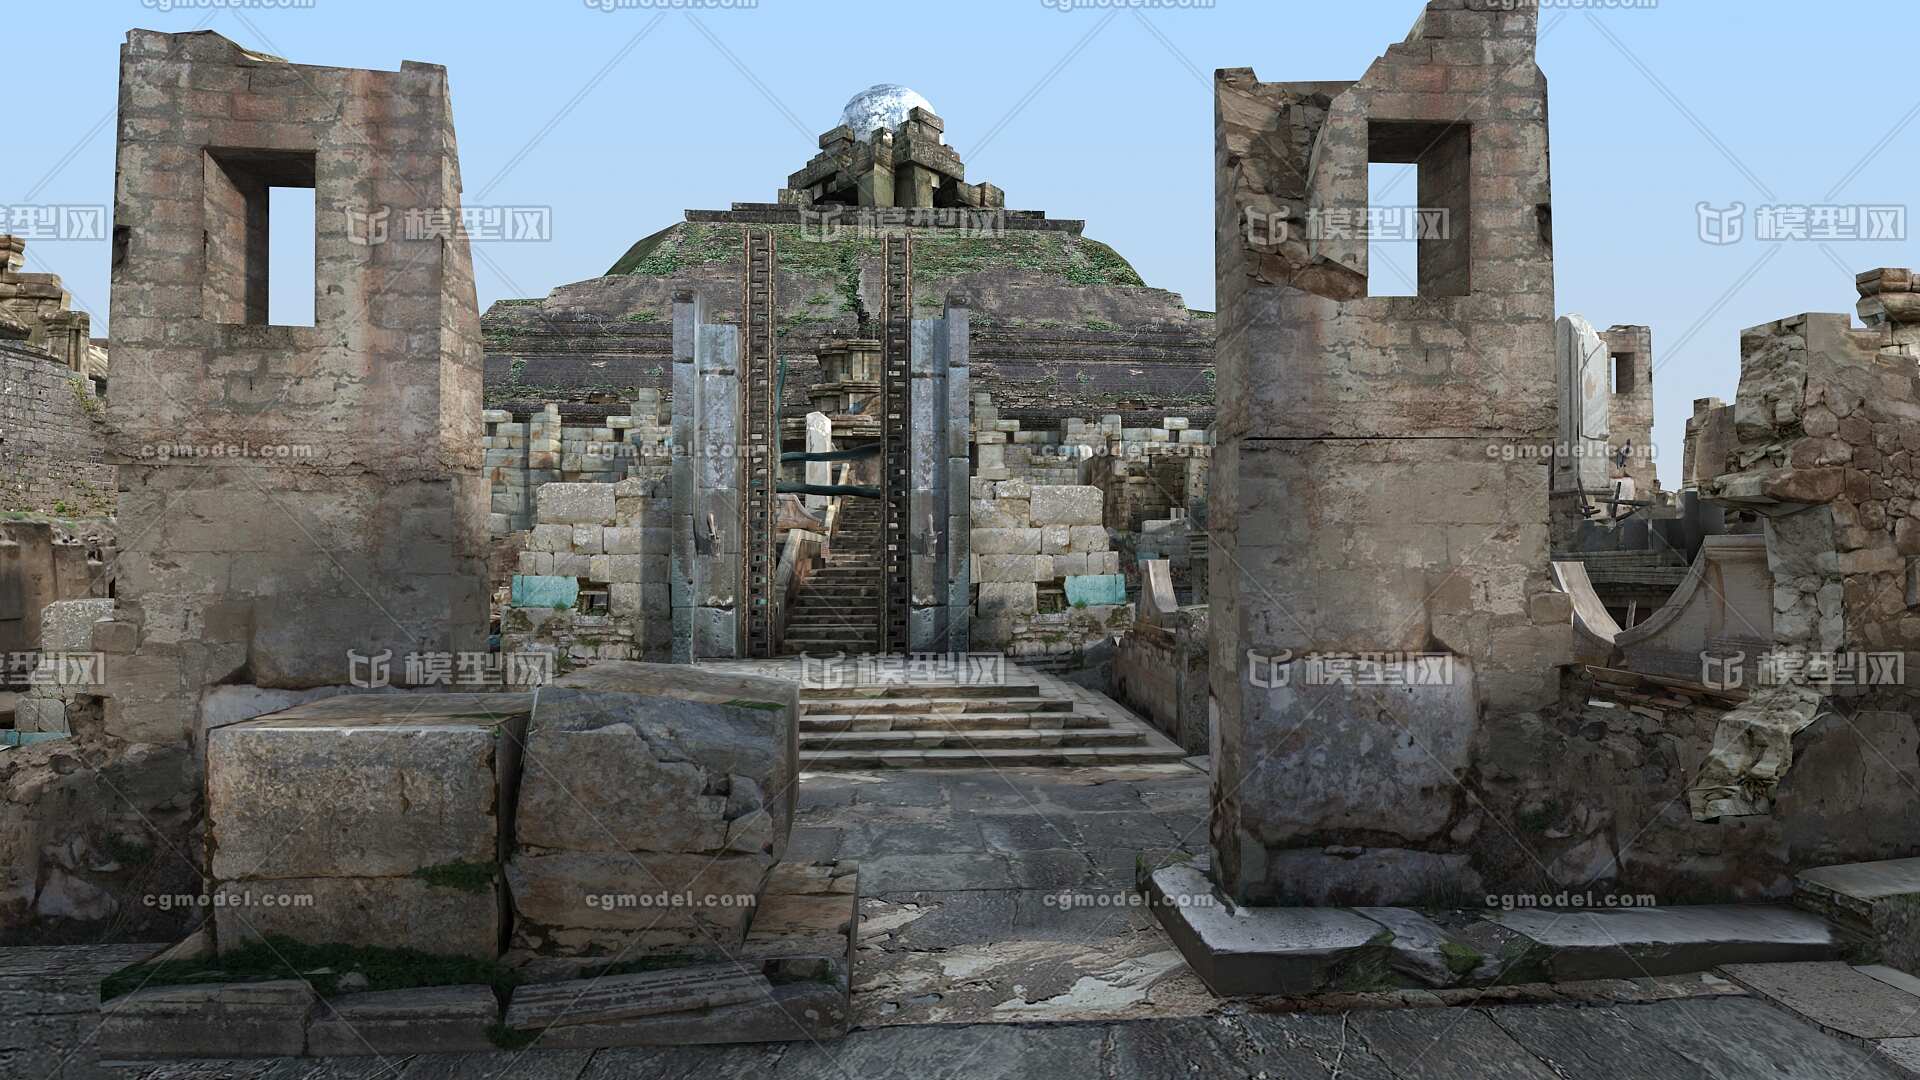 玛雅古城 玛雅文化 玛雅遗址 亚特兰蒂斯 失落的文明 带obj格式